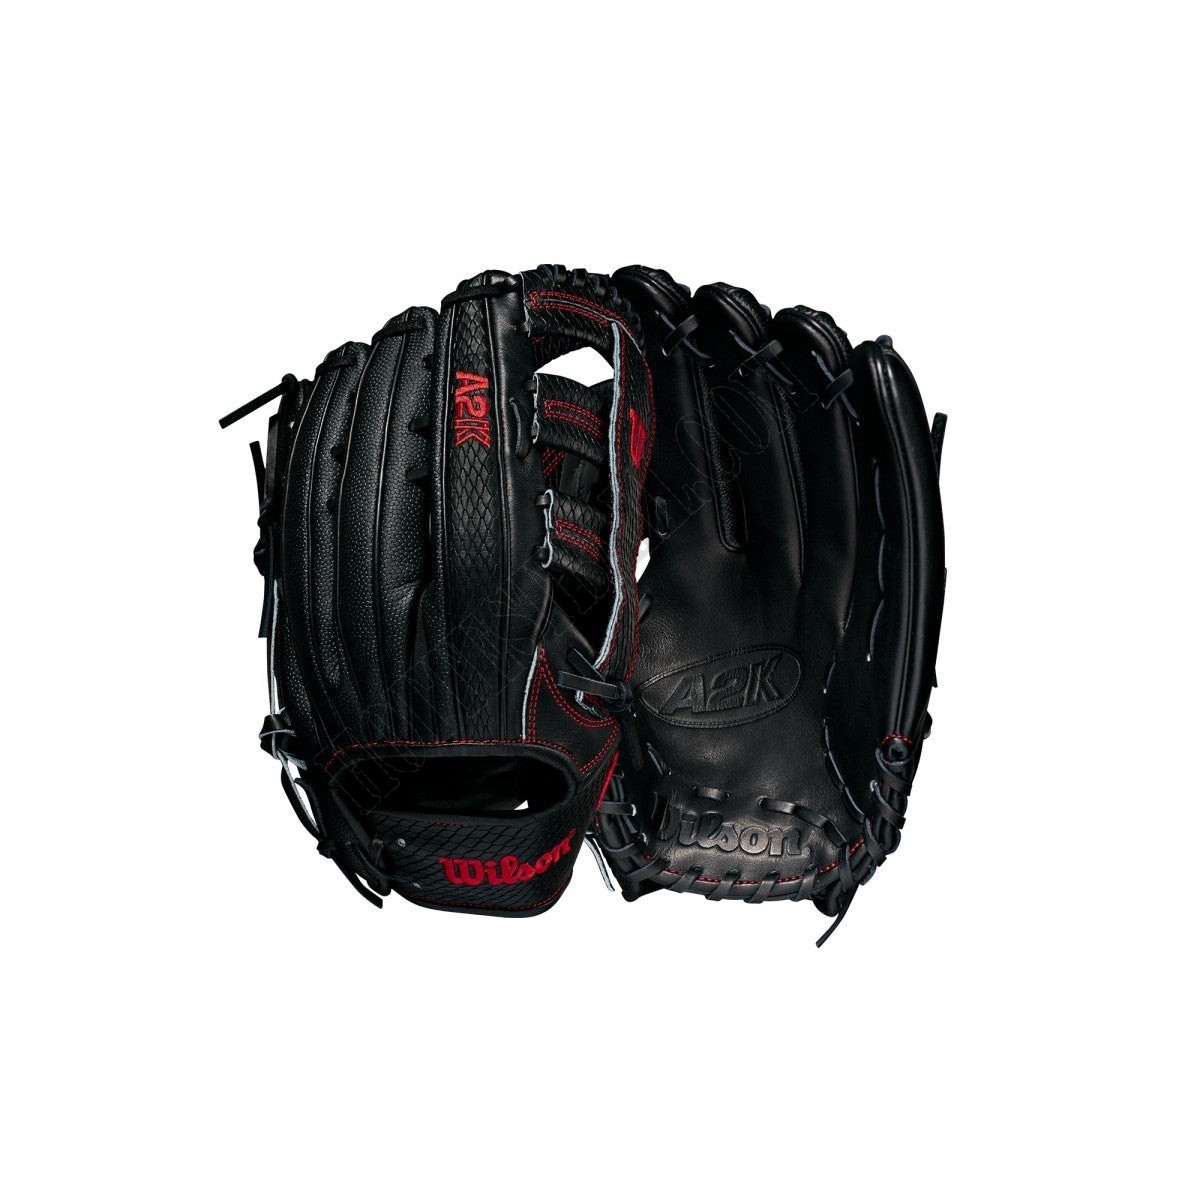 2021 A2K 1775SS 12.75" Outfield Baseball Glove ● Wilson Promotions - 2021 A2K 1775SS 12.75" Outfield Baseball Glove ● Wilson Promotions